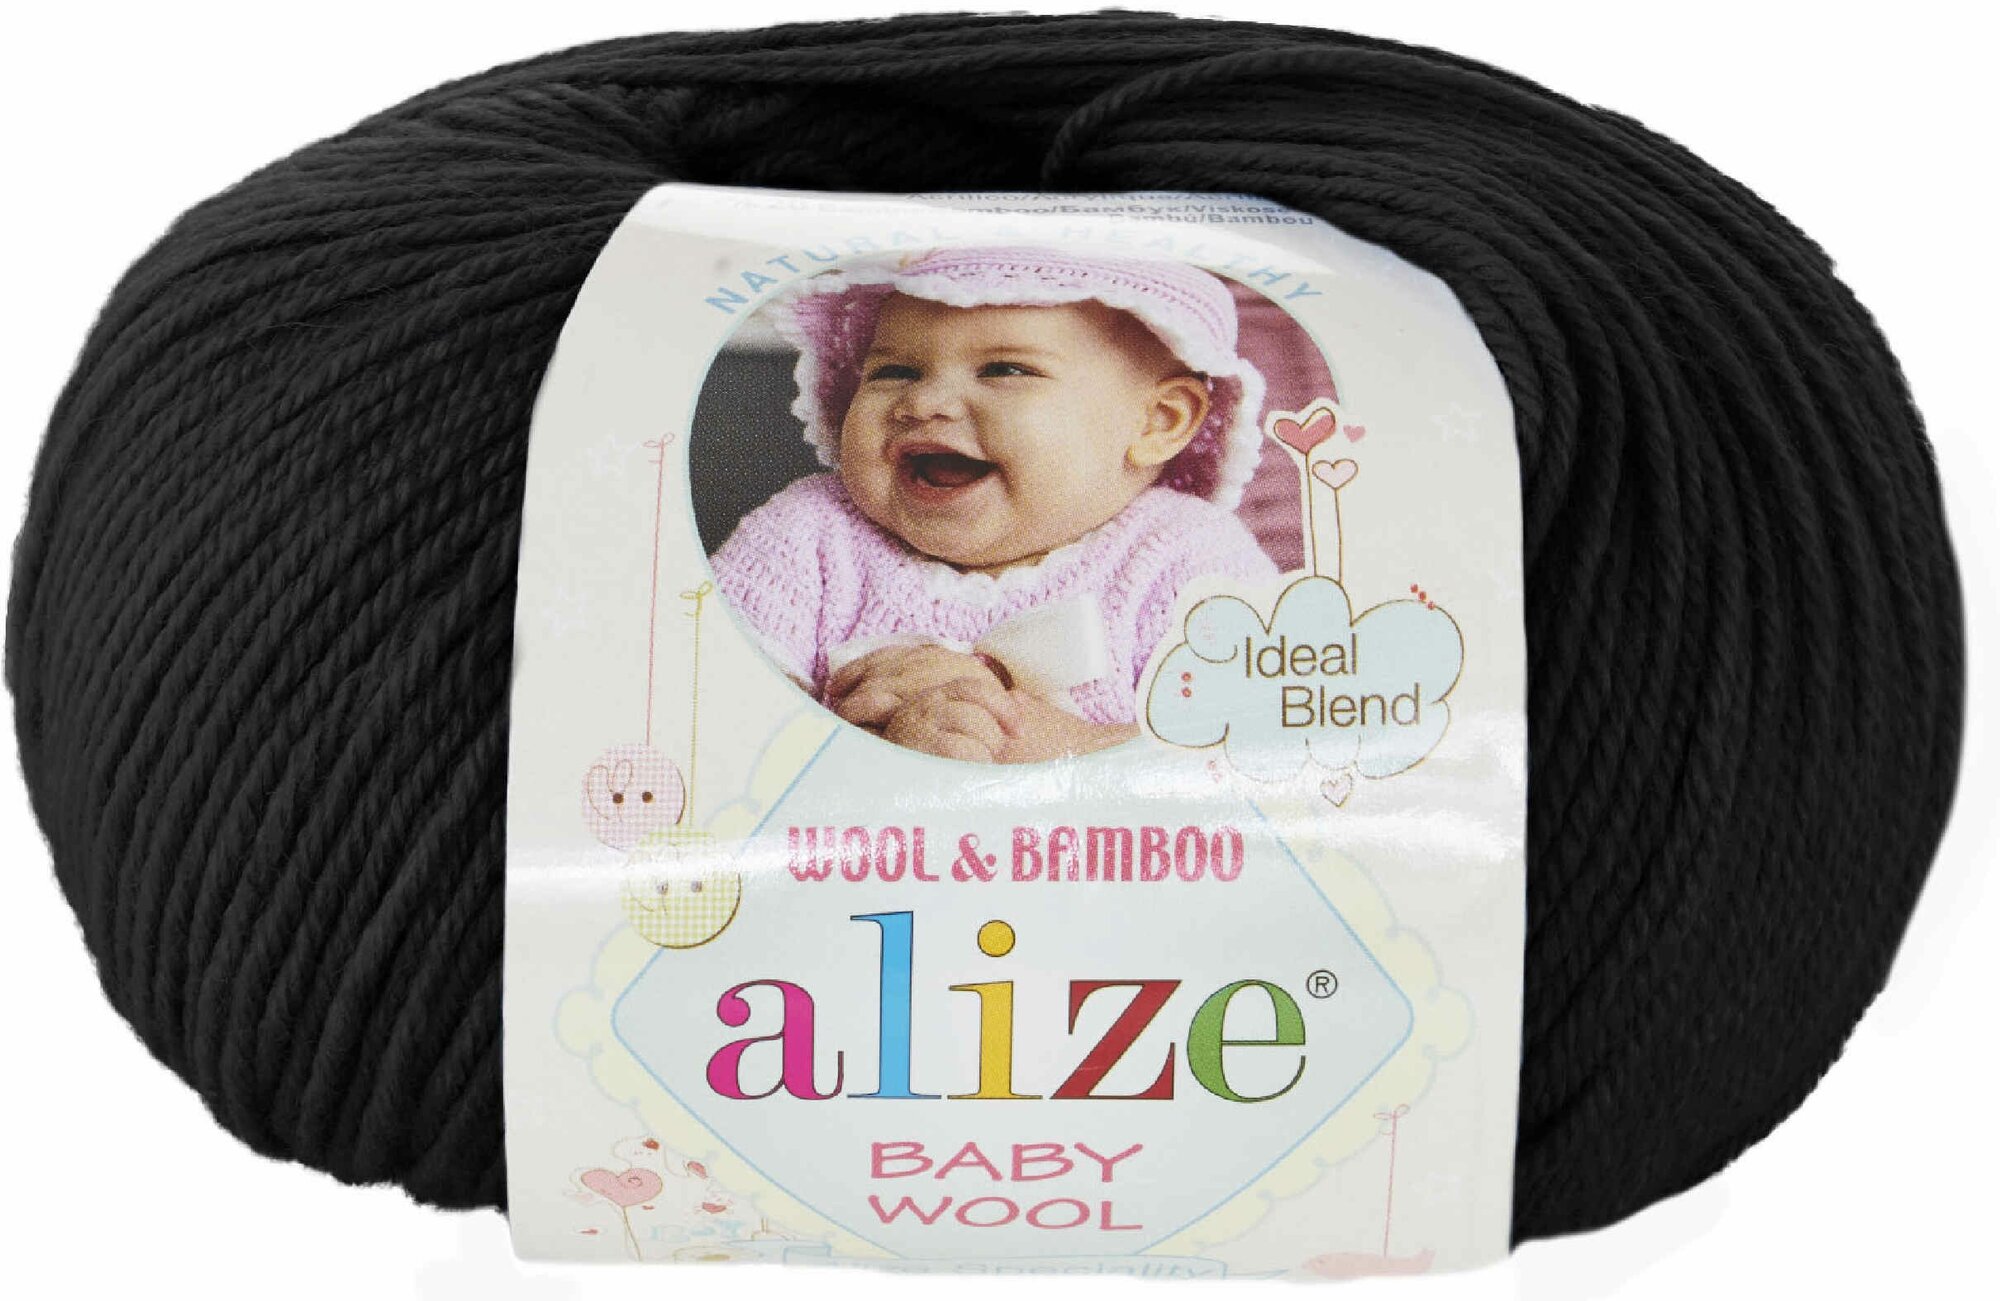 Пряжа Alize Baby Wool черный (60), 40%шерсть/20%бамбук/40%акрил, 175м, 50г, 1шт